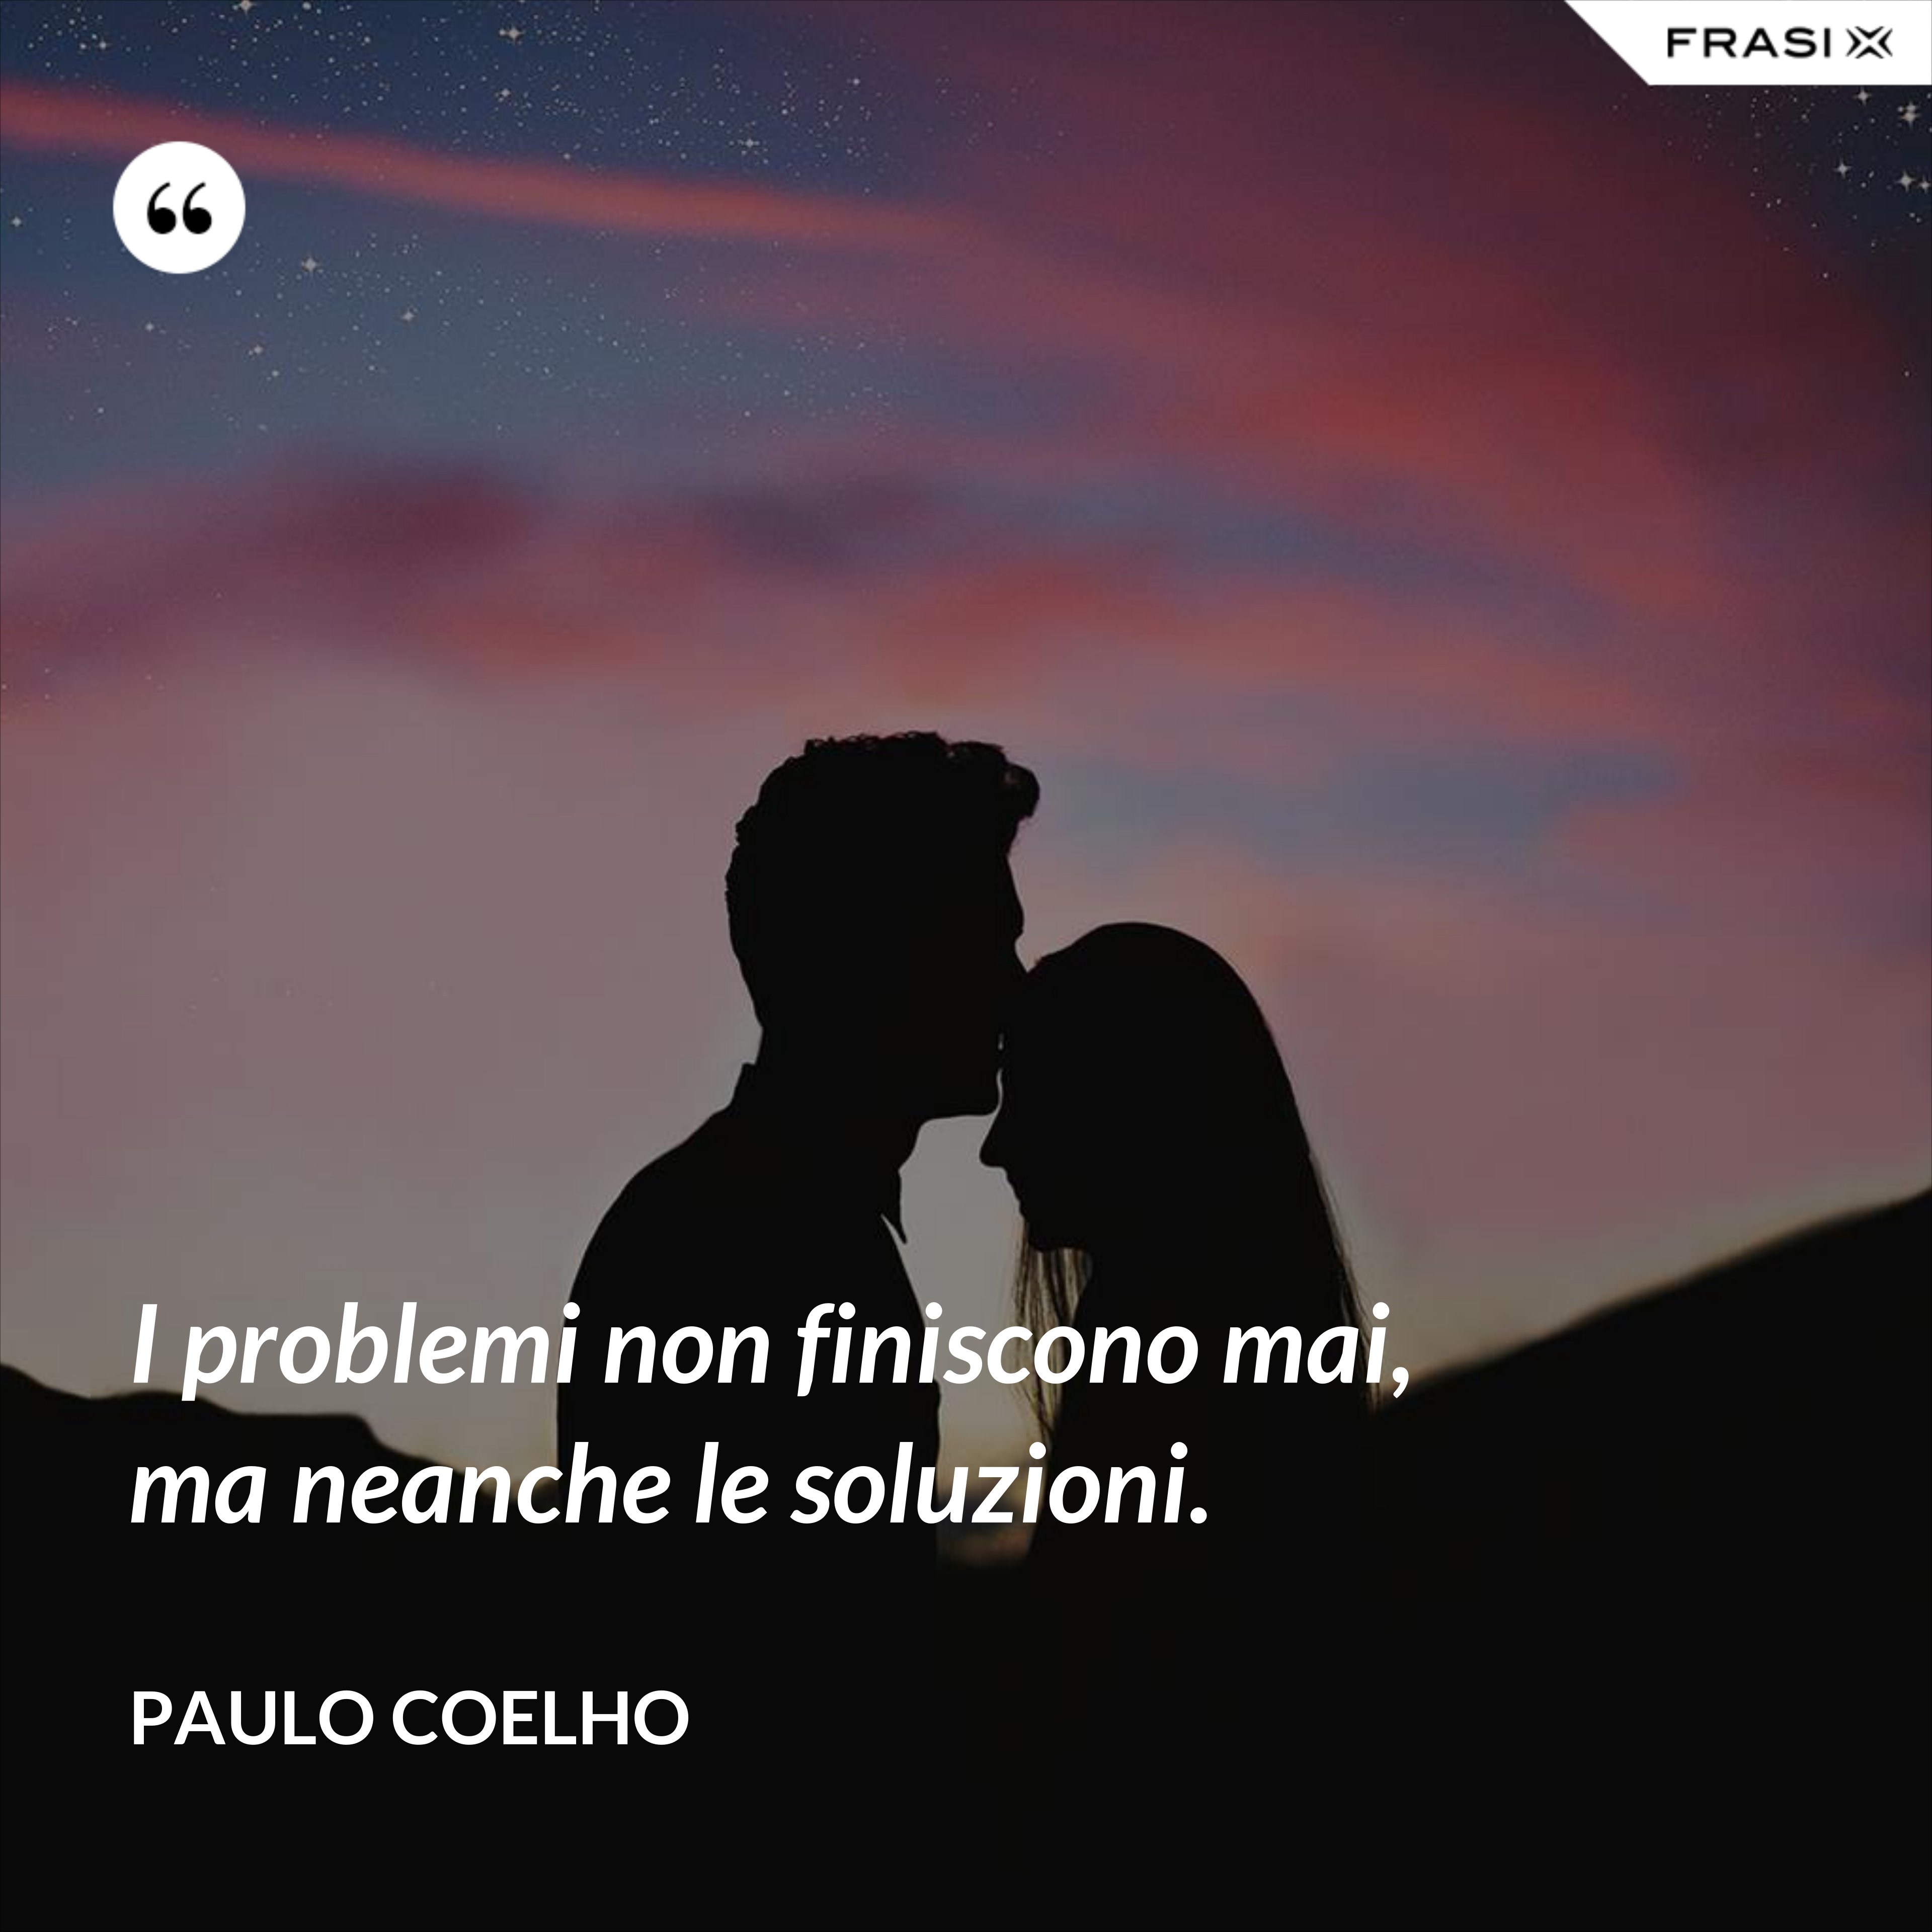 I problemi non finiscono mai, ma neanche le soluzioni. - Paulo Coelho